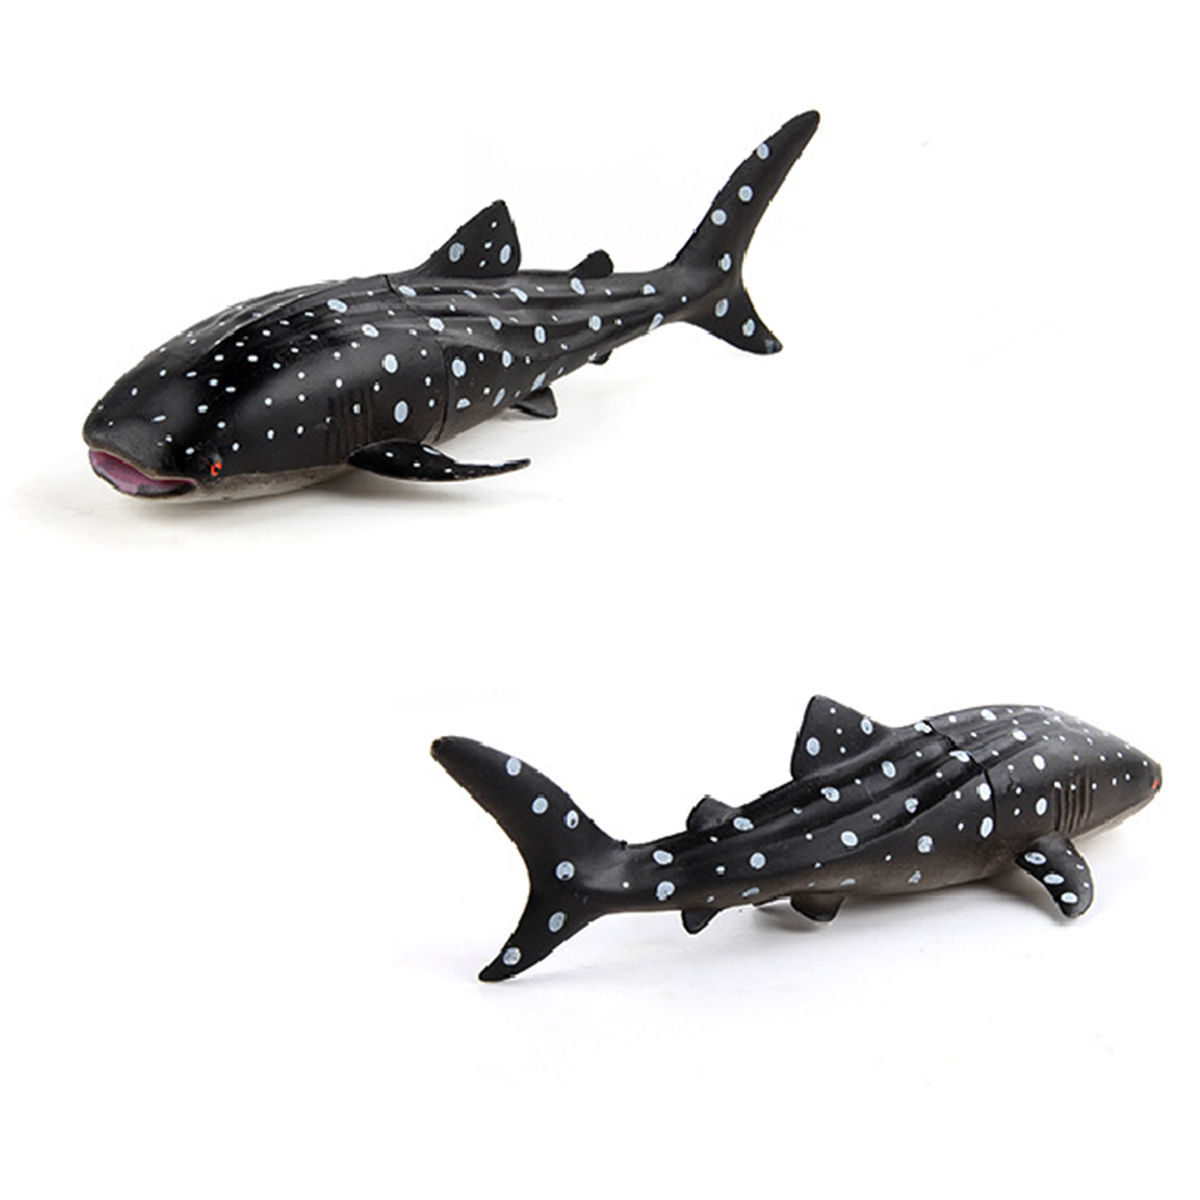 Hình ảnh Mô hình Cá mập voi (cá nhám voi) 23x5 cm - Đồ chơi động vật biển New4all CMV1814 Rhincodon typus